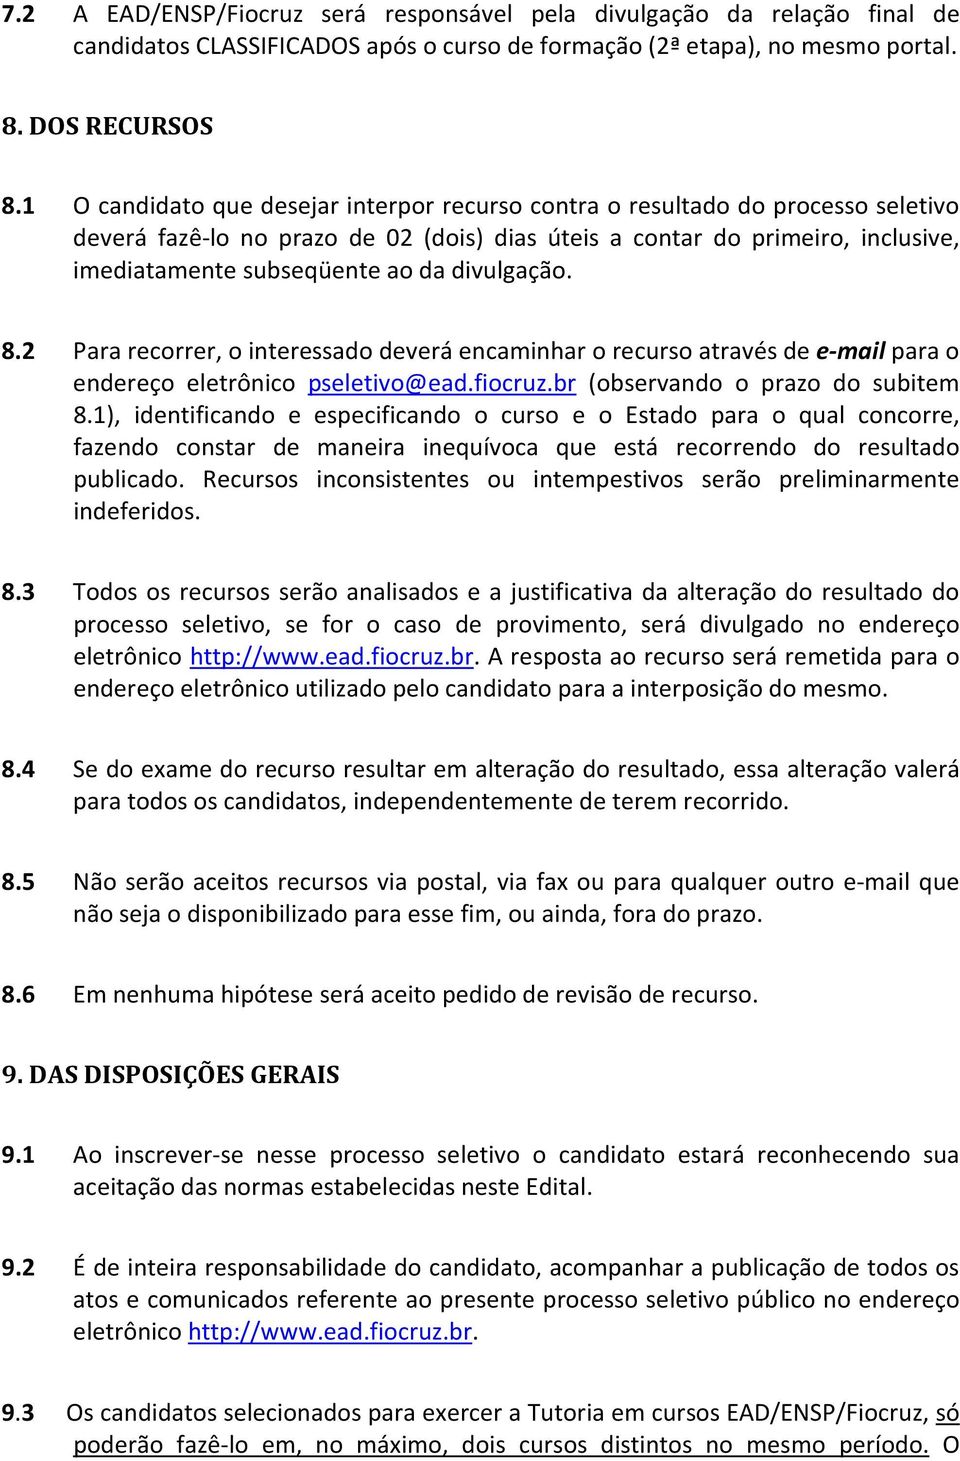 divulgação. 8.2 Para recorrer, o interessado deverá encaminhar o recurso através de e-mail para o endereço eletrônico pseletivo@ead.fiocruz.br (observando o prazo do subitem 8.